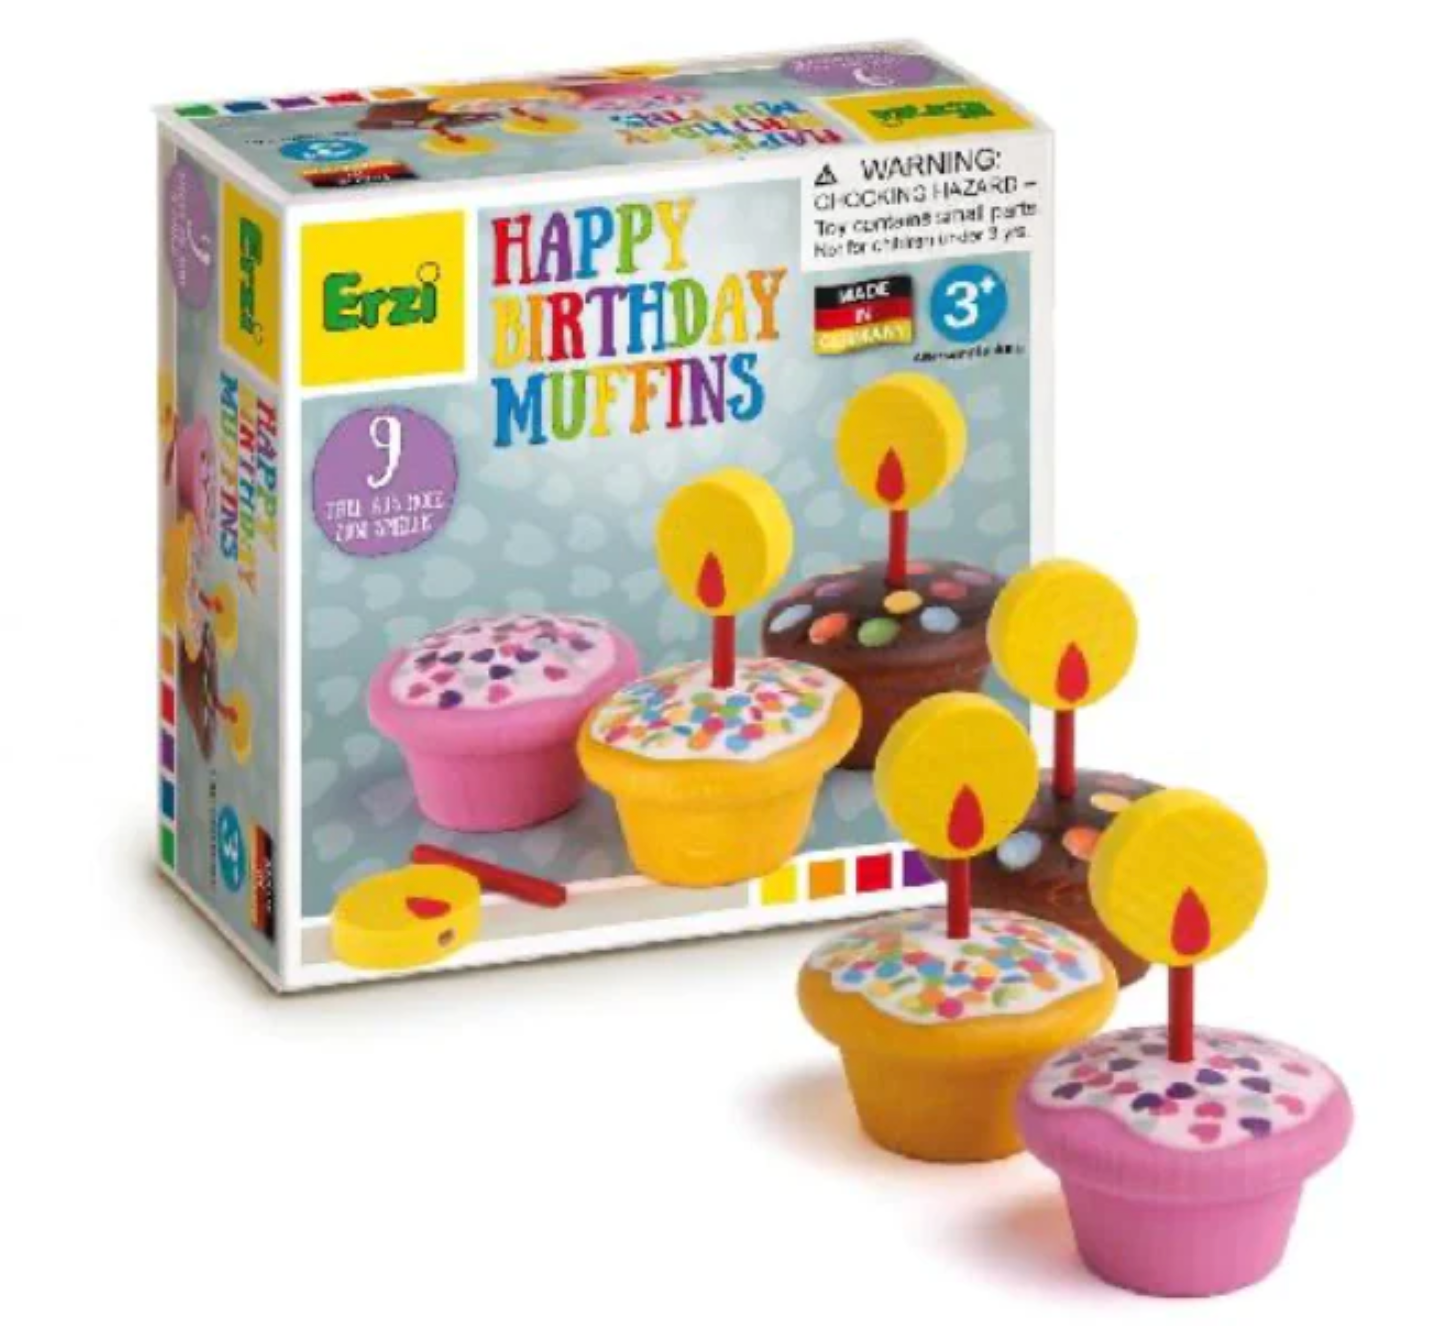 Baked - Happy Birthday Muffins By Erzi